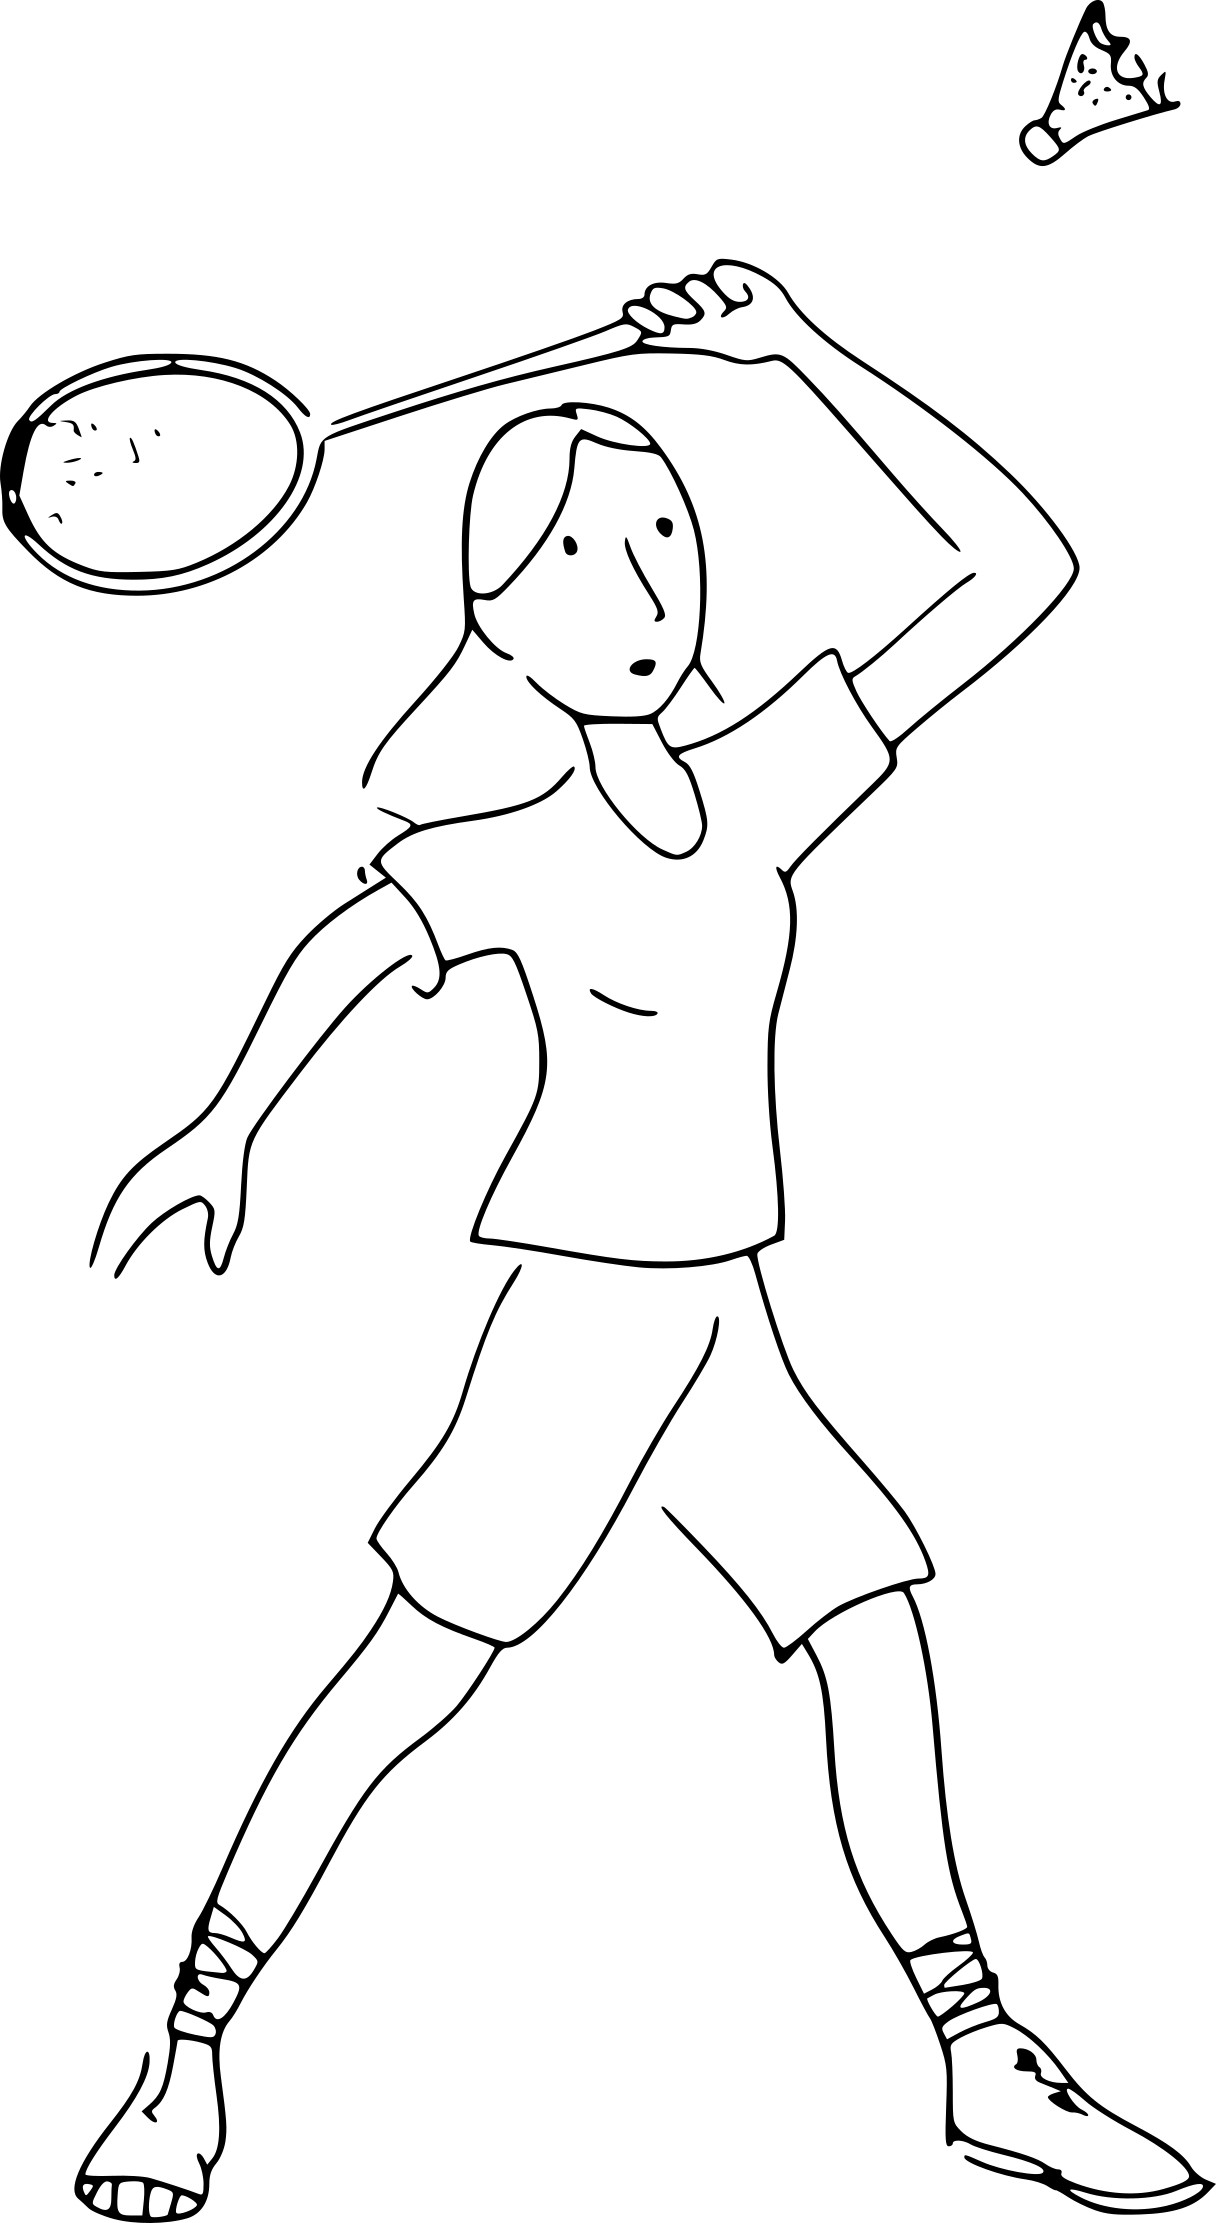 Disegno di Badminton da colorare